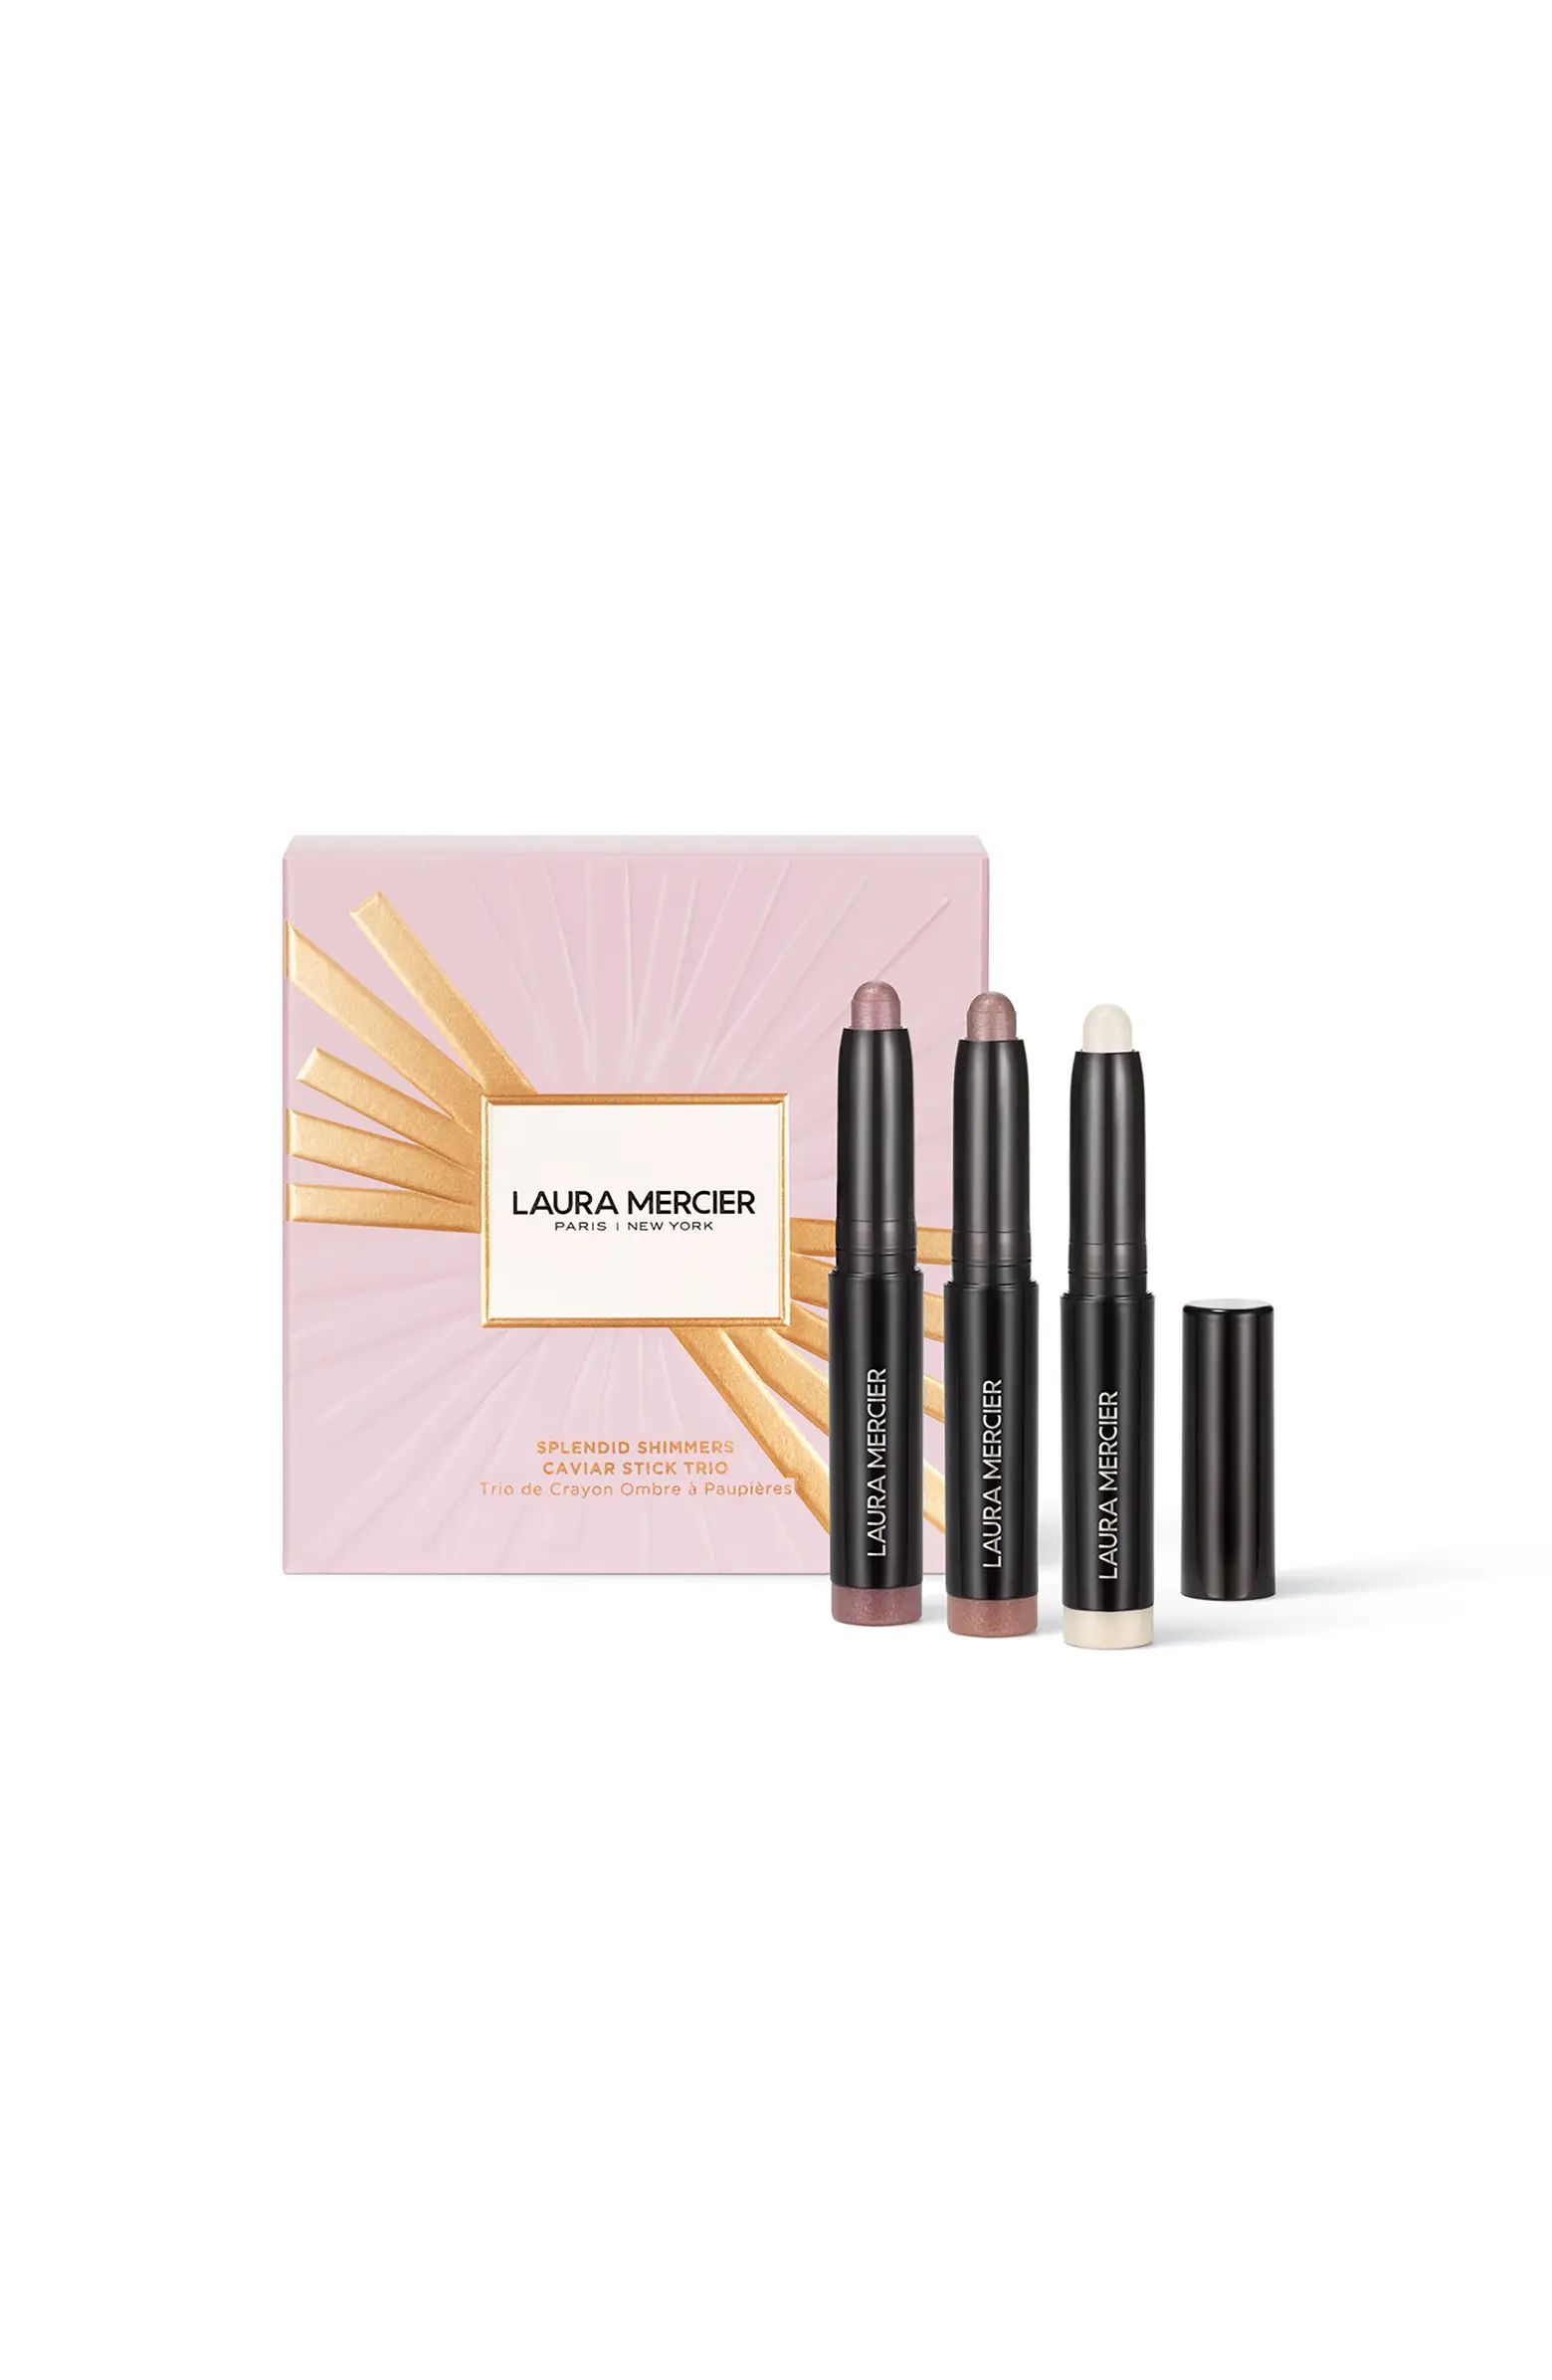 Laura Mercier Splendid Shimmers Mini Caviar Stick Eyeshadow Gift Set USD $53 Value | Nordstrom | Nordstrom